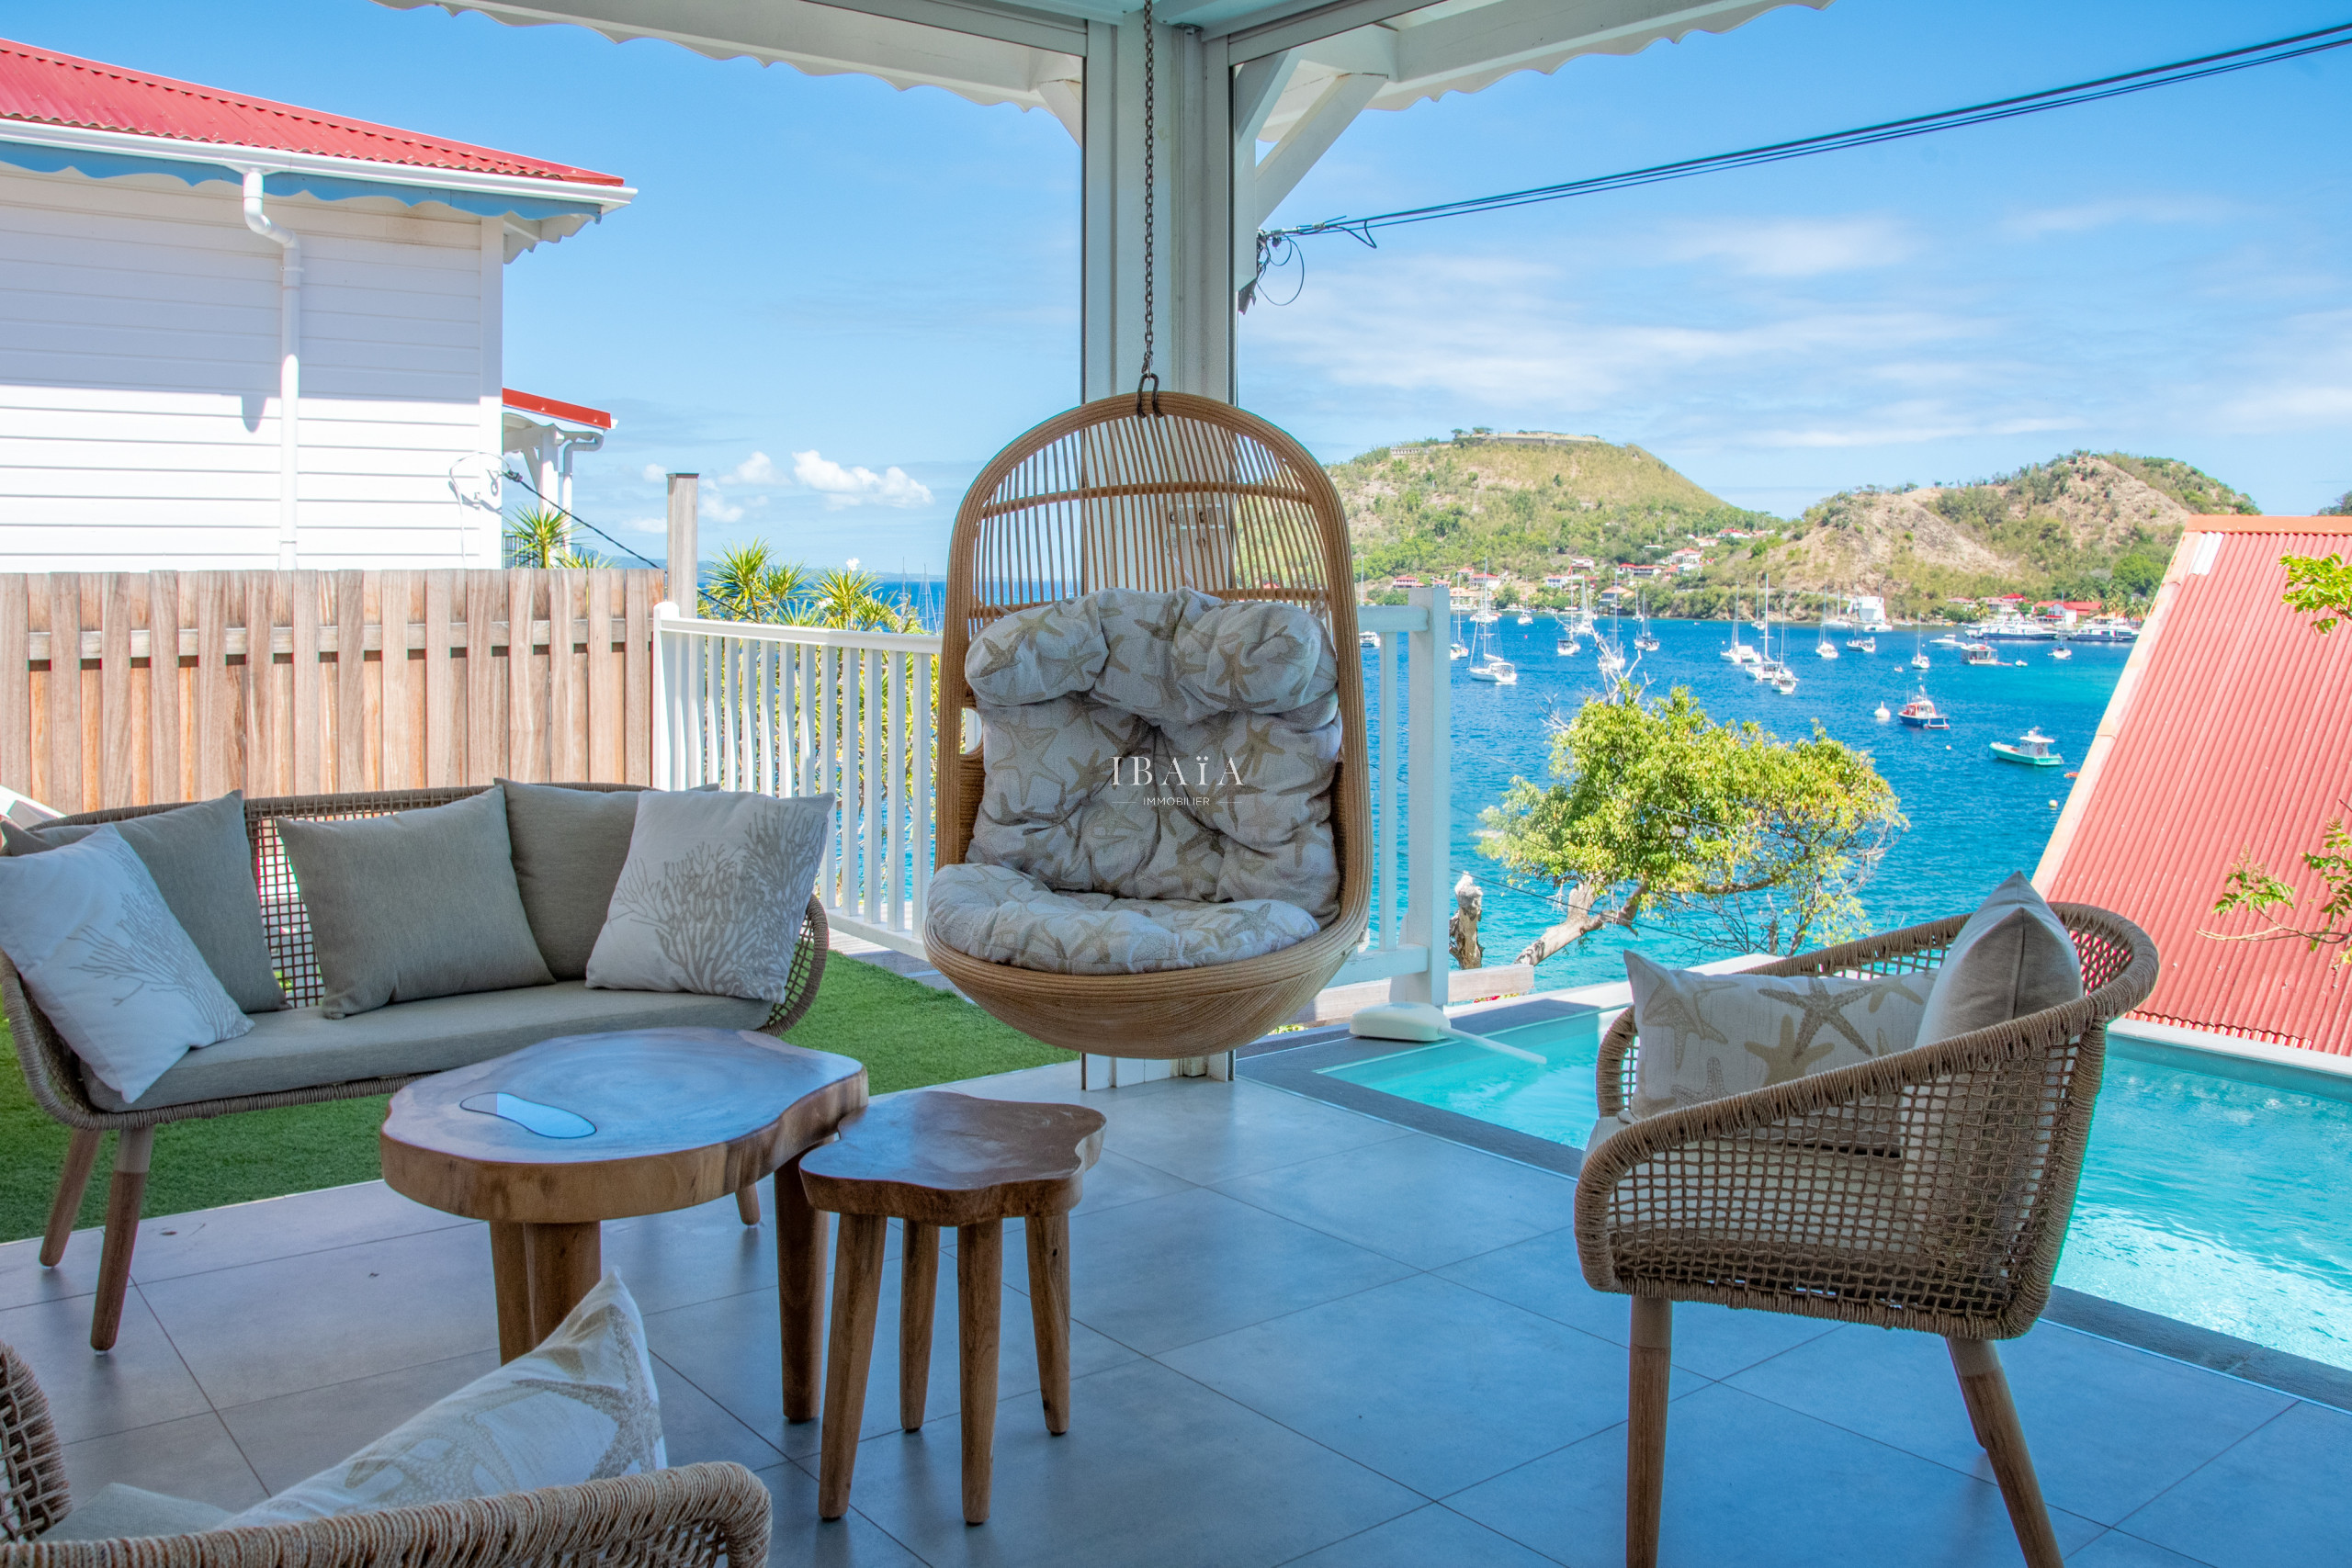 Vue de la terrasse avec salon d'extérieur, fauteuil suspendu, piscine et vue sur la baie dans une villa haut de gamme aux Antilles